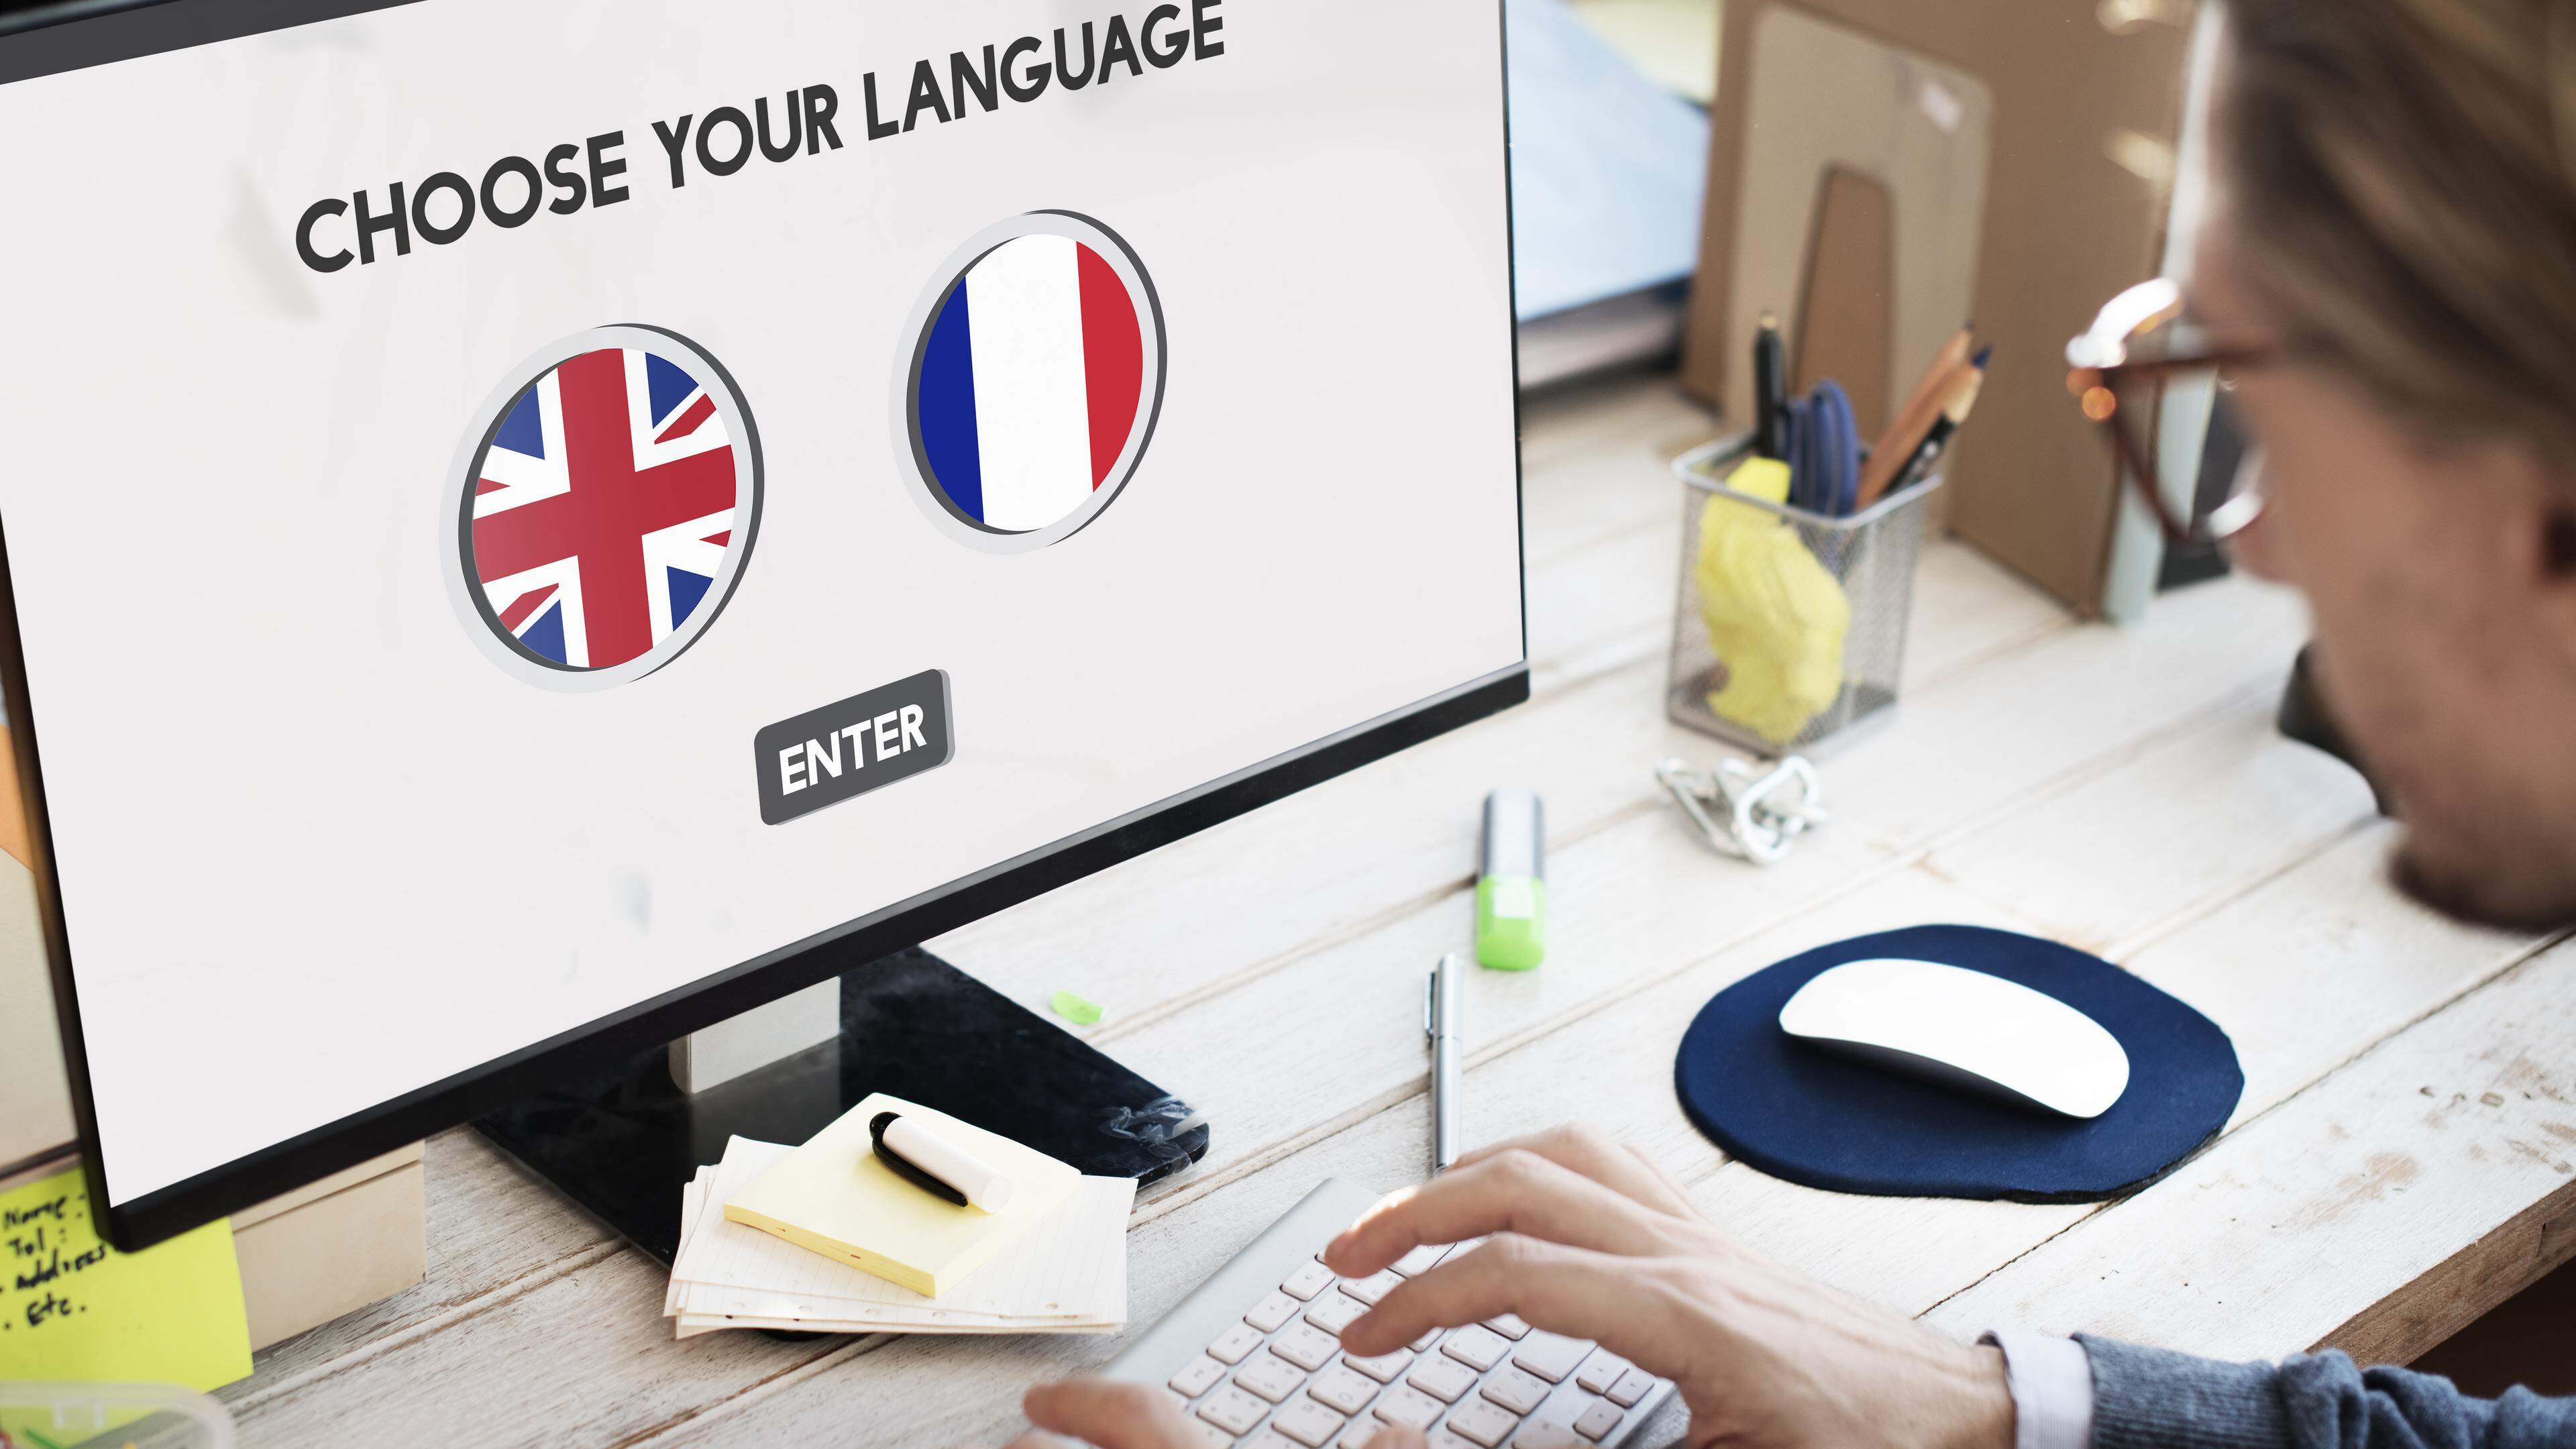 Les professionnels de l’informatique qui ne parlent pas français se sentent exclus du marché de l’emploi, bien que l’Adem ait publié des milliers d’offres d’emploi.